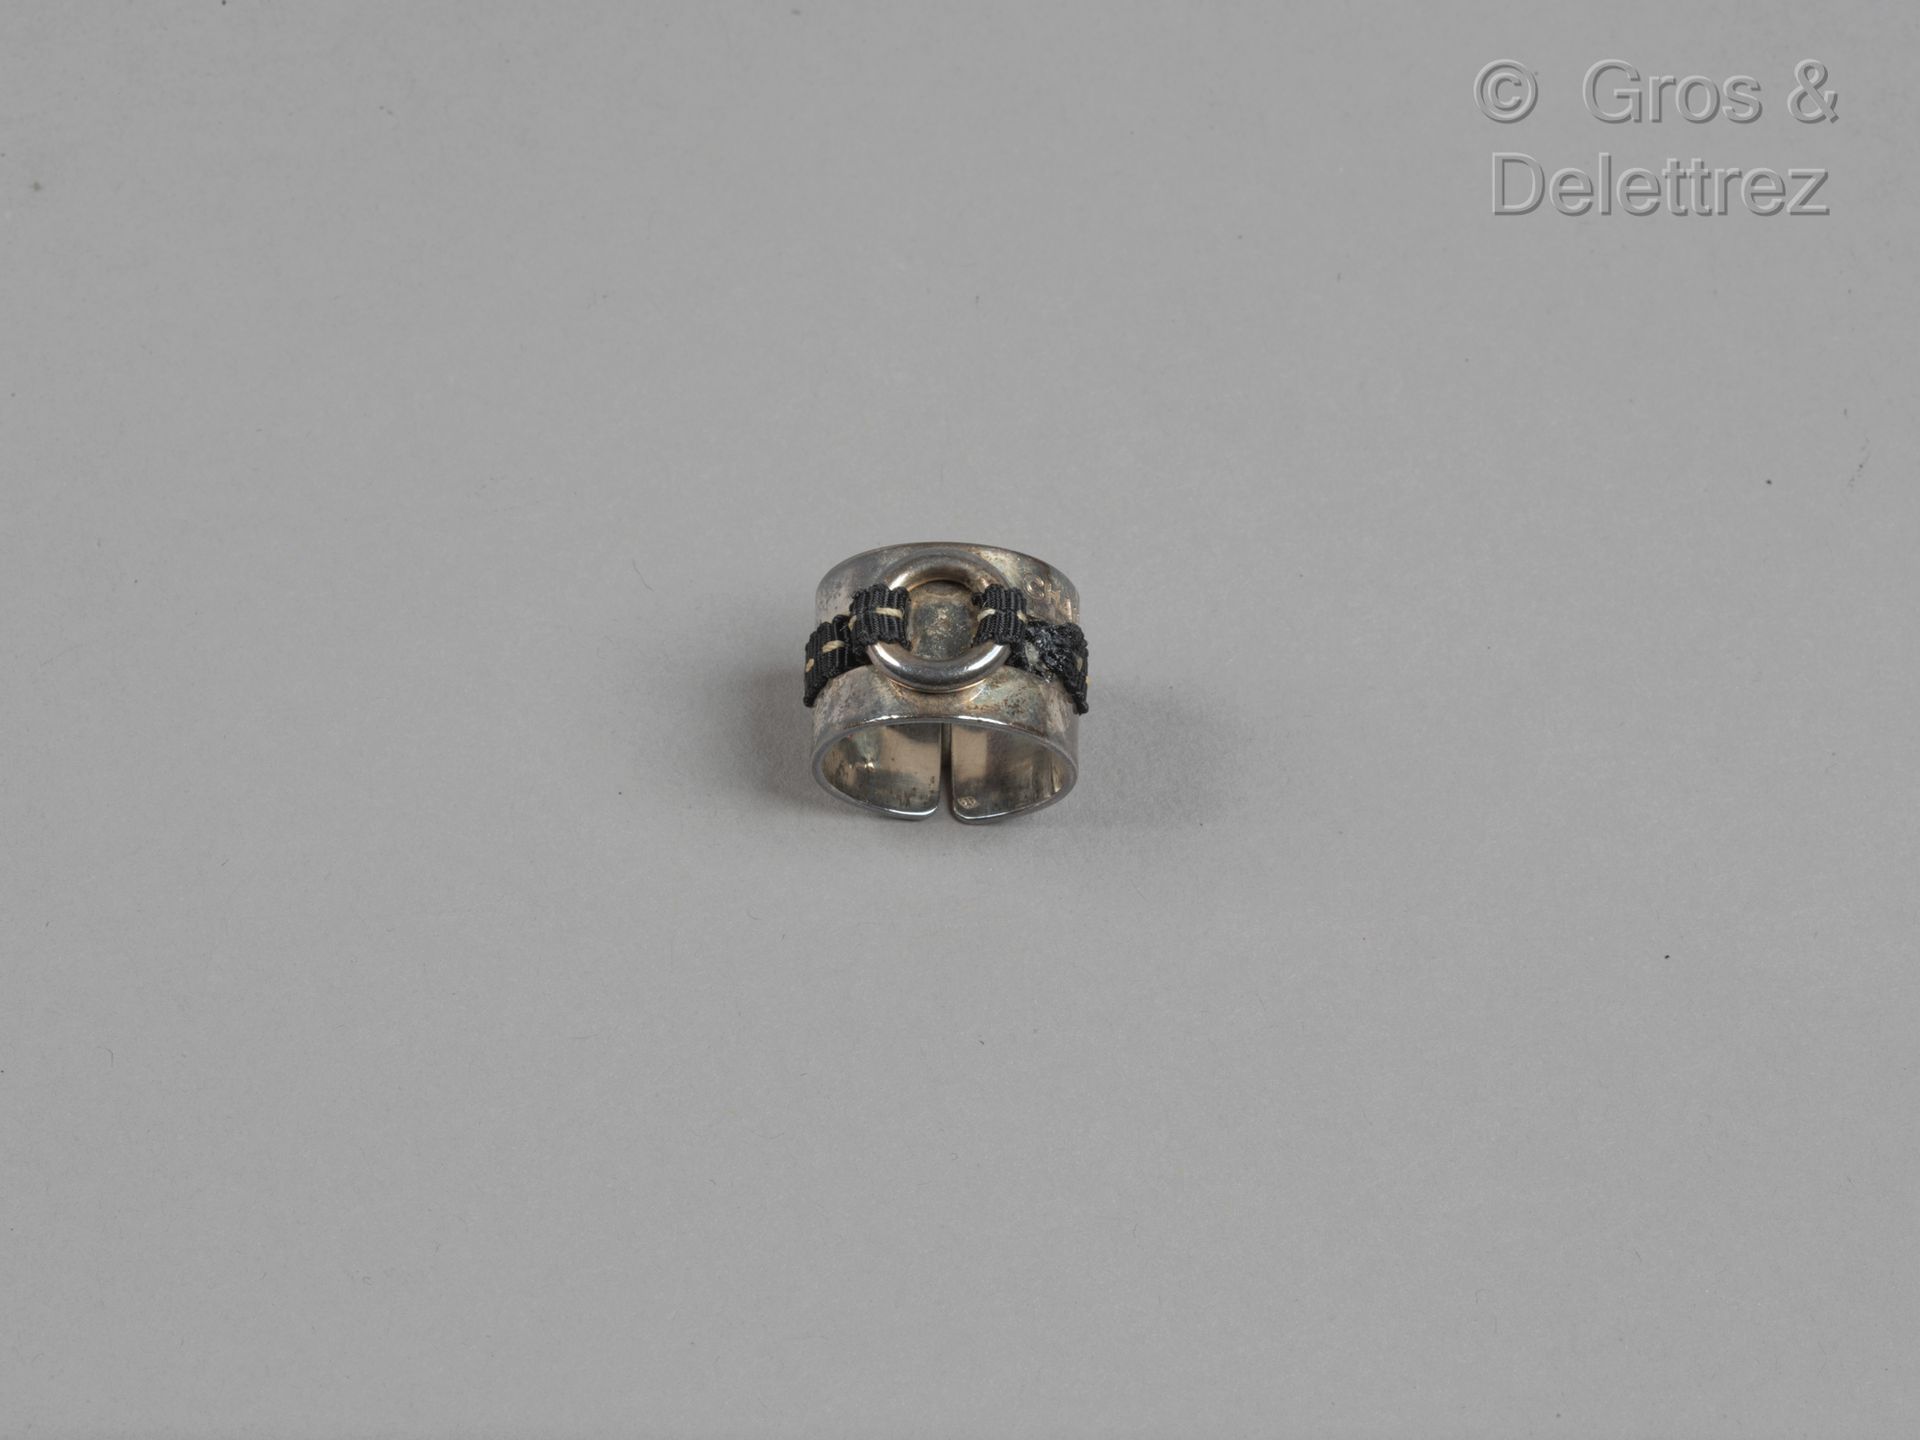 Null 香奈儿

银色925千分之一的开口戒指，穿孔，黑色尼龙带，白色。(氧化、磨损)。